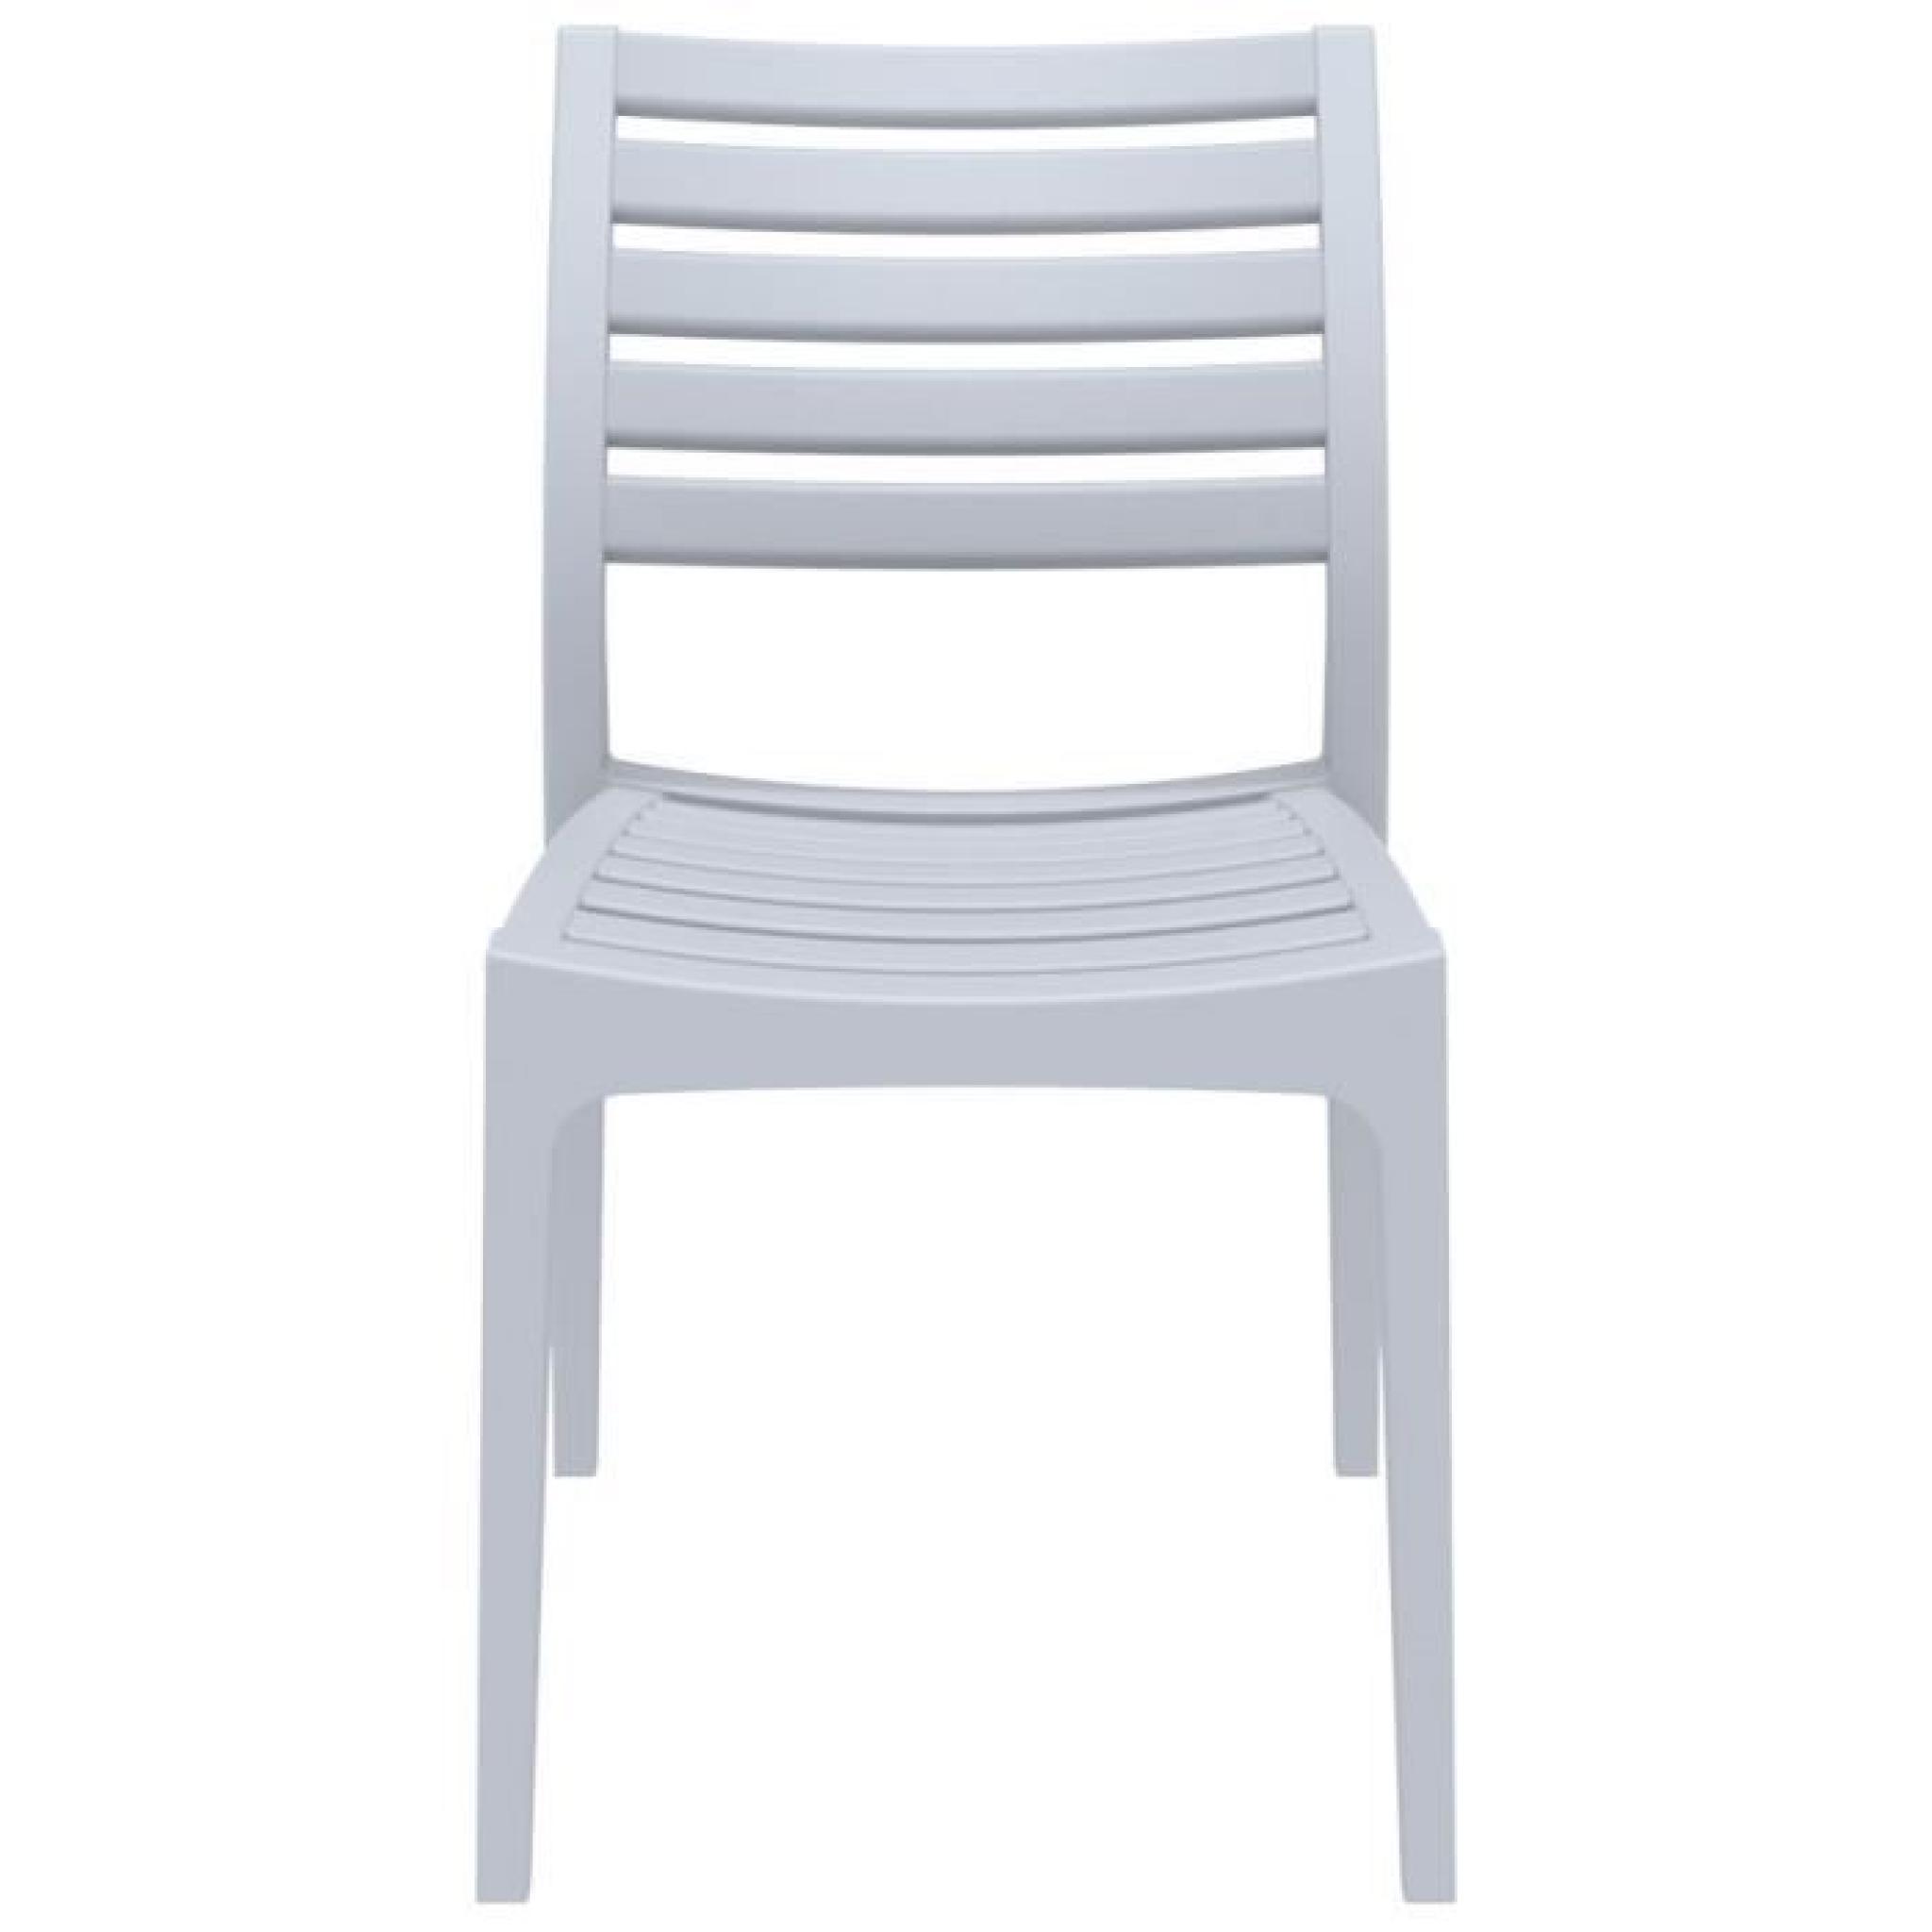 Chaise de terrasse 'PRIMO' design grise claire pas cher